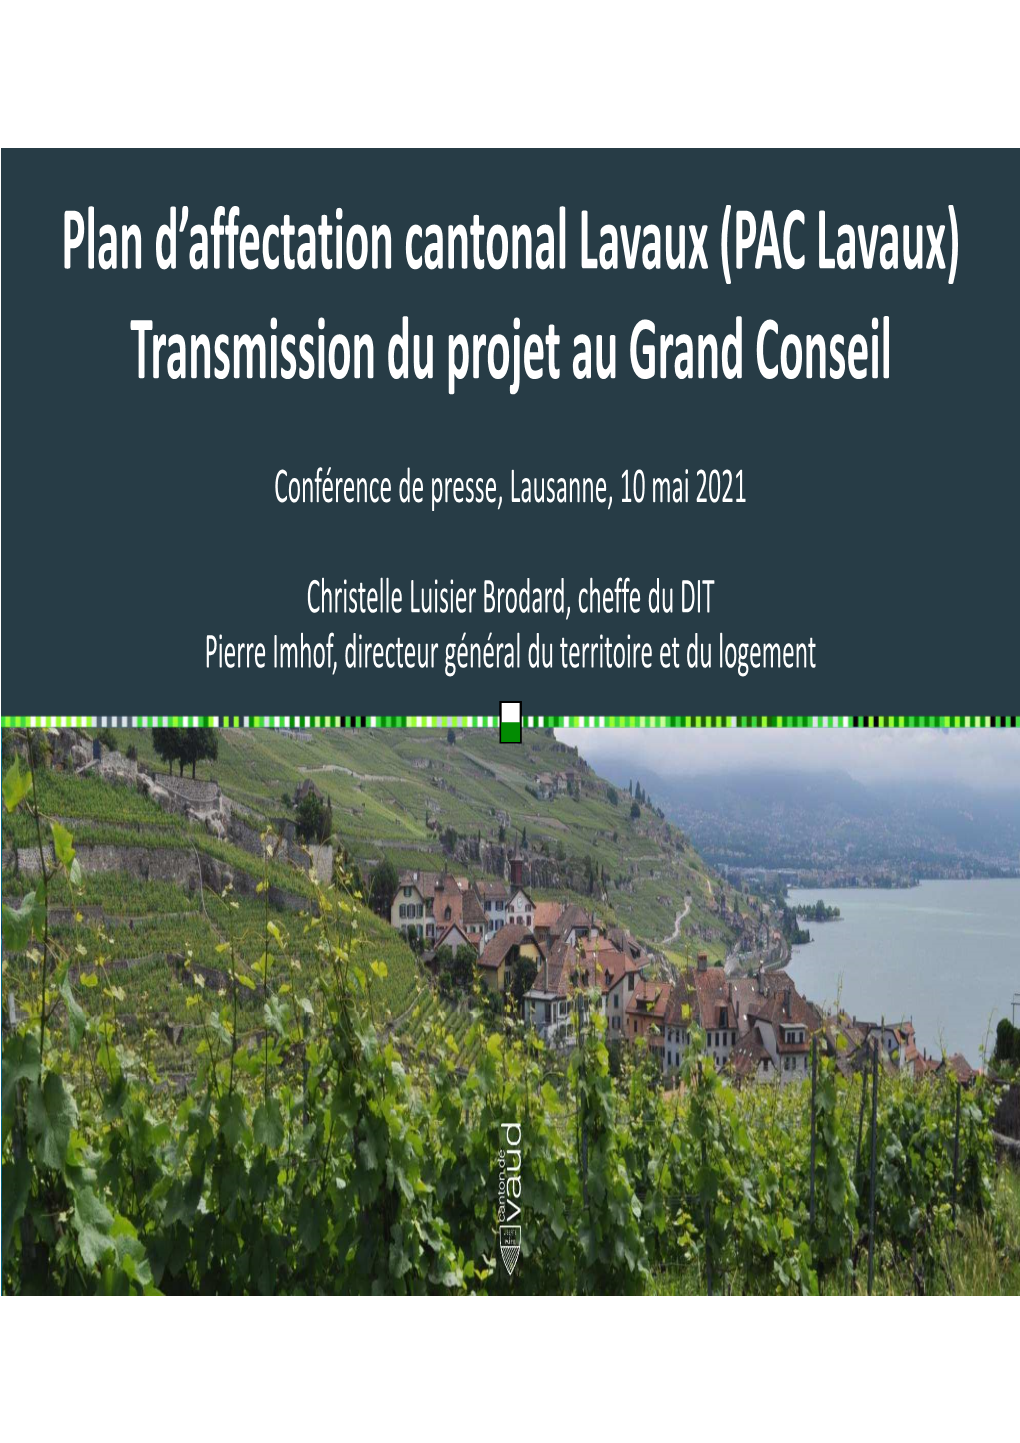 PAC Lavaux) Transmission Du Projet Au Grand Conseil